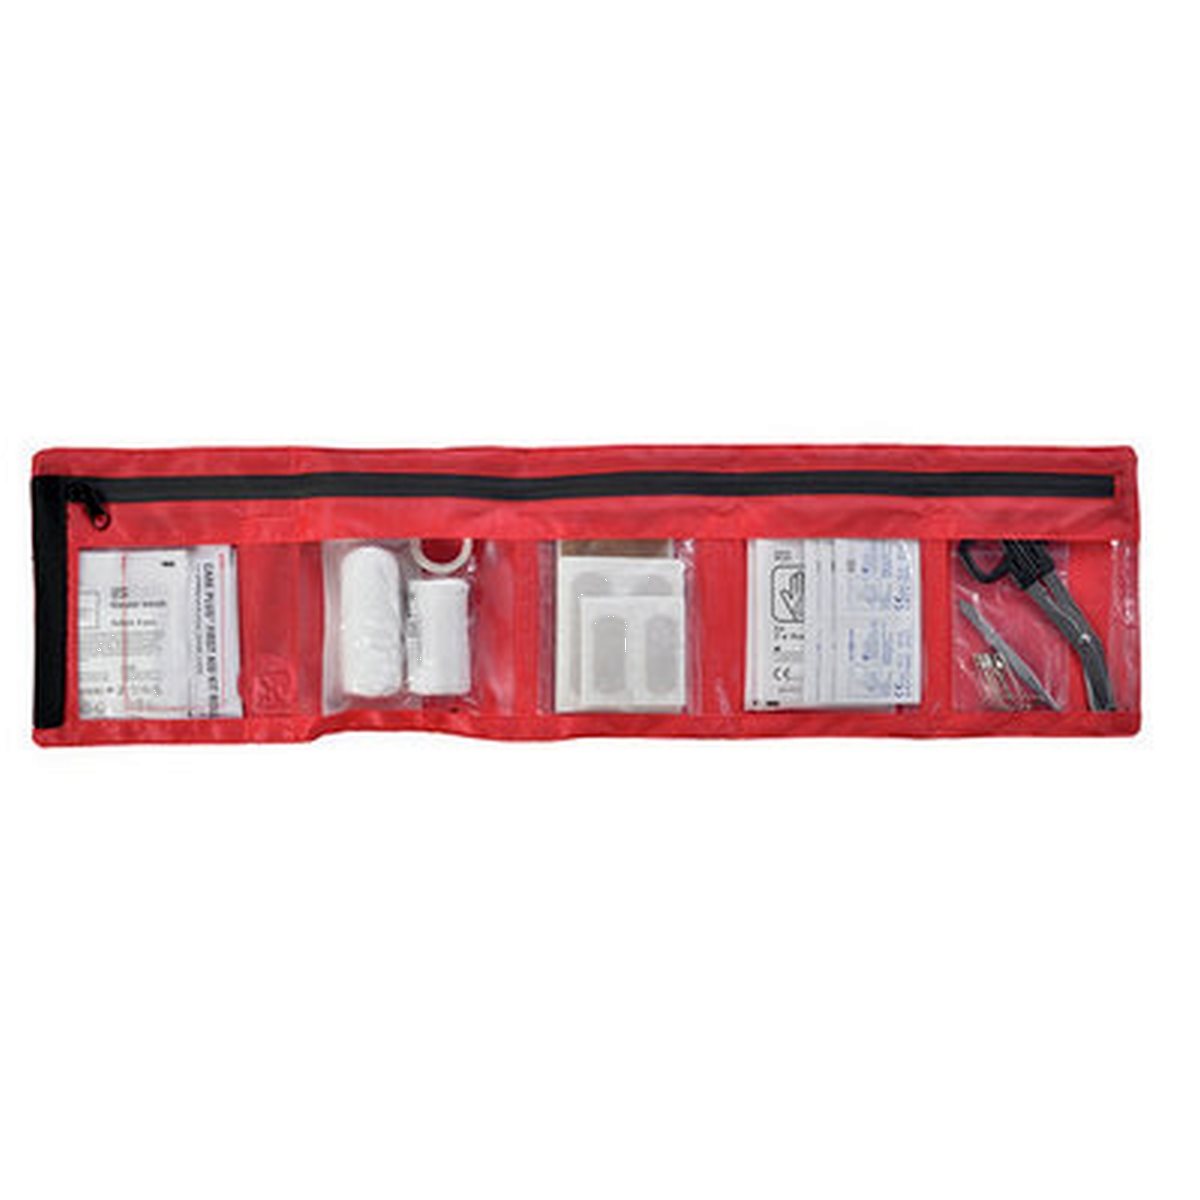 Care Plus First Aid Kit Roll Out - Light en Dry - Medium EHBO - Reisartikelen-nl